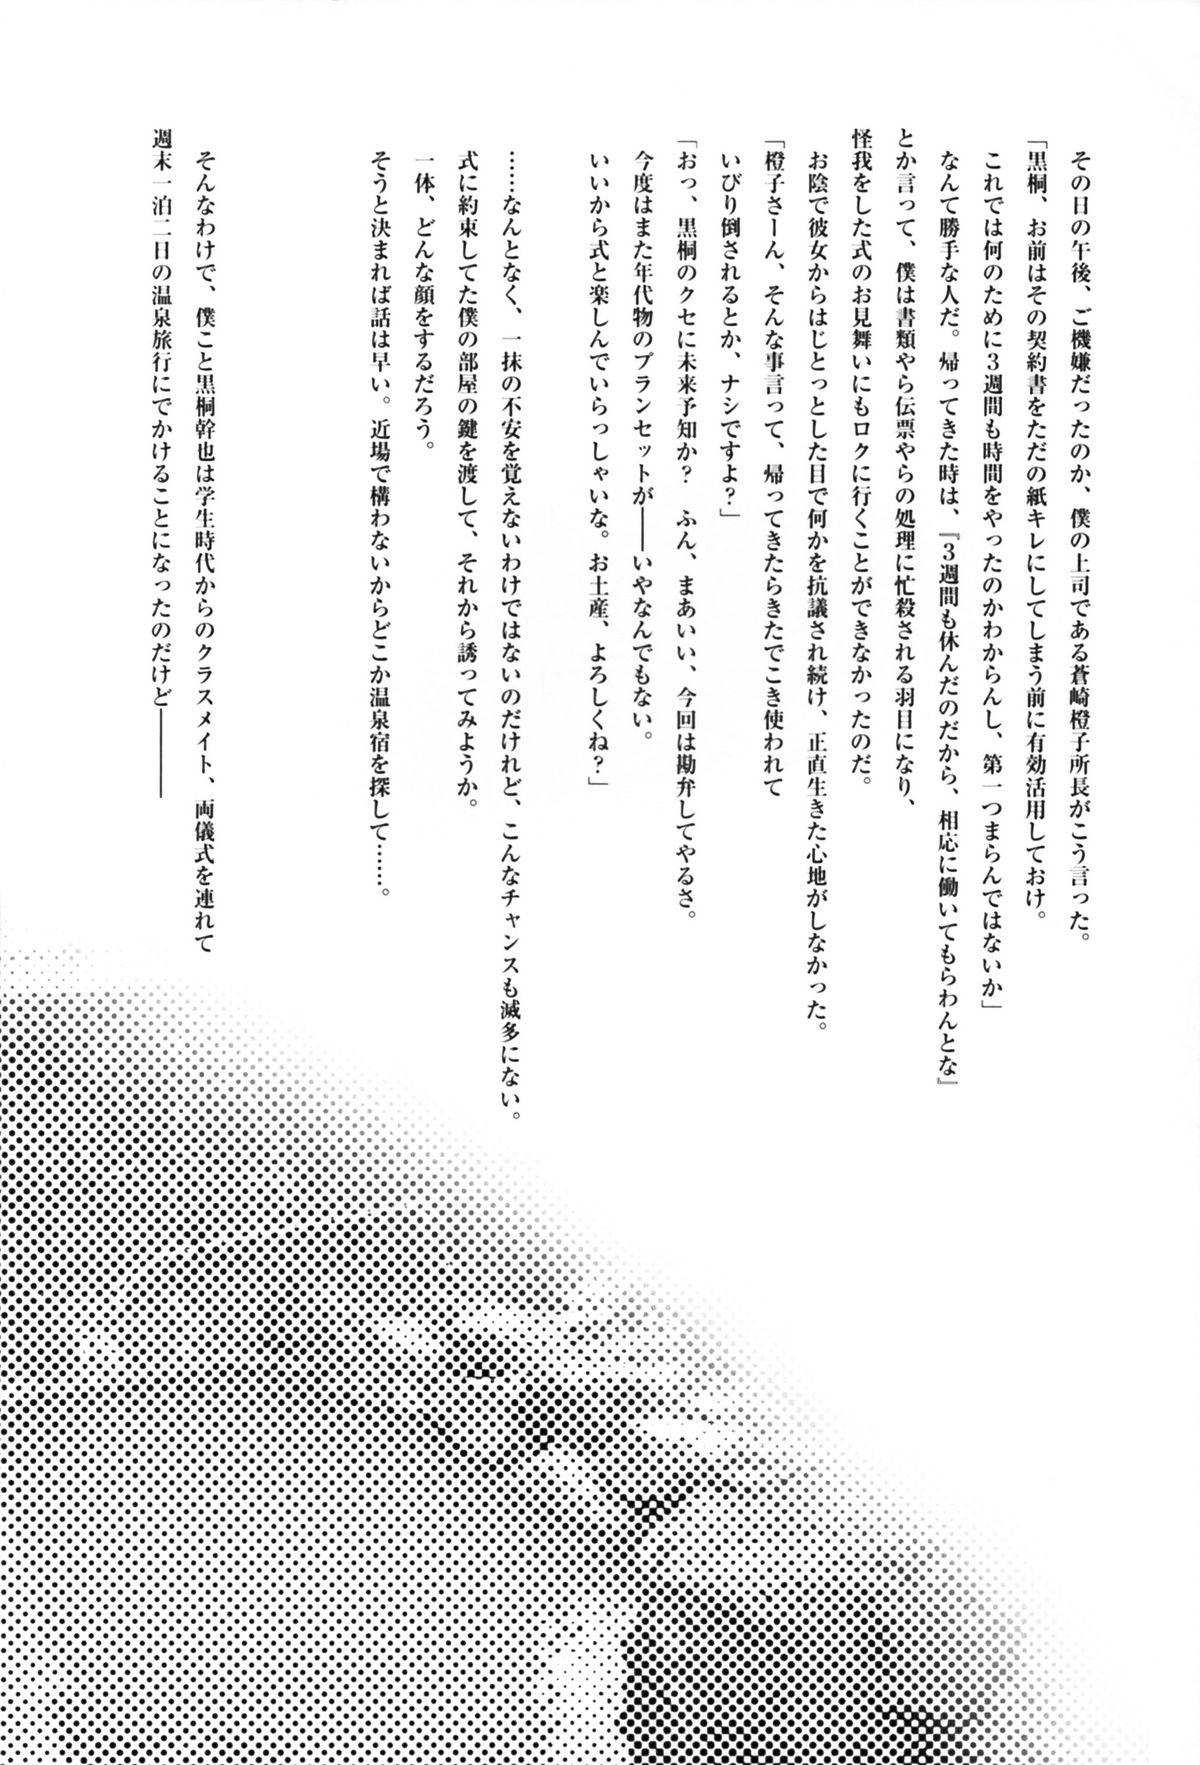 Beach Futari no Dokidoki Onsen Ryokou - Kara no kyoukai Gets - Page 4